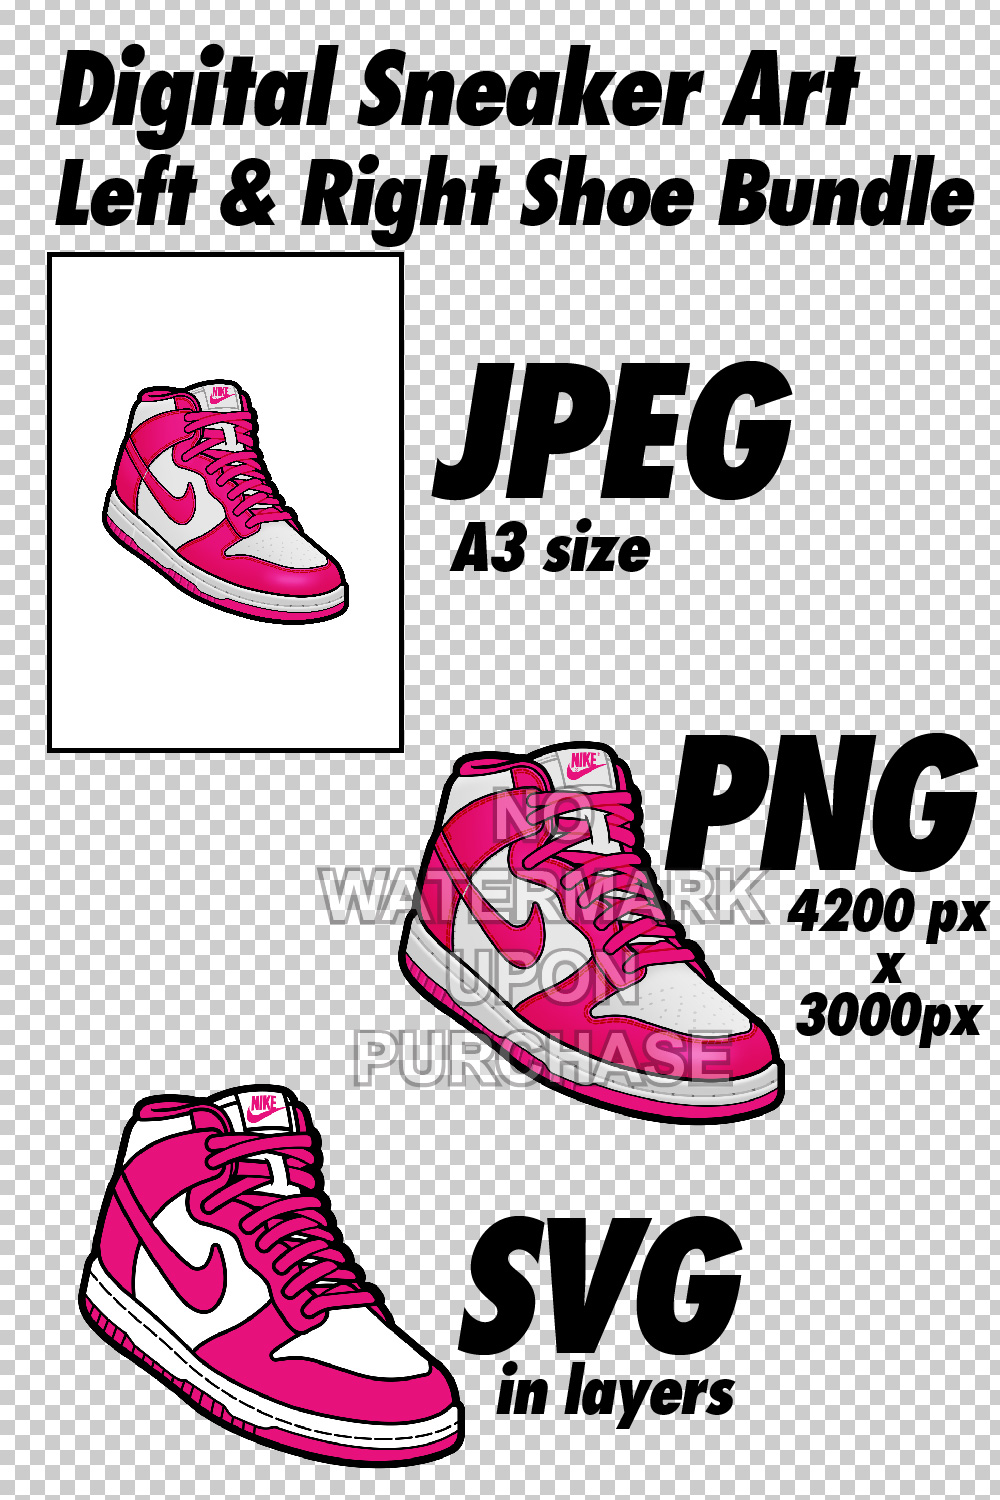 Nike Dunk High Prime Pink JPEG PNG SVG digital sneaker art pinterest preview image.